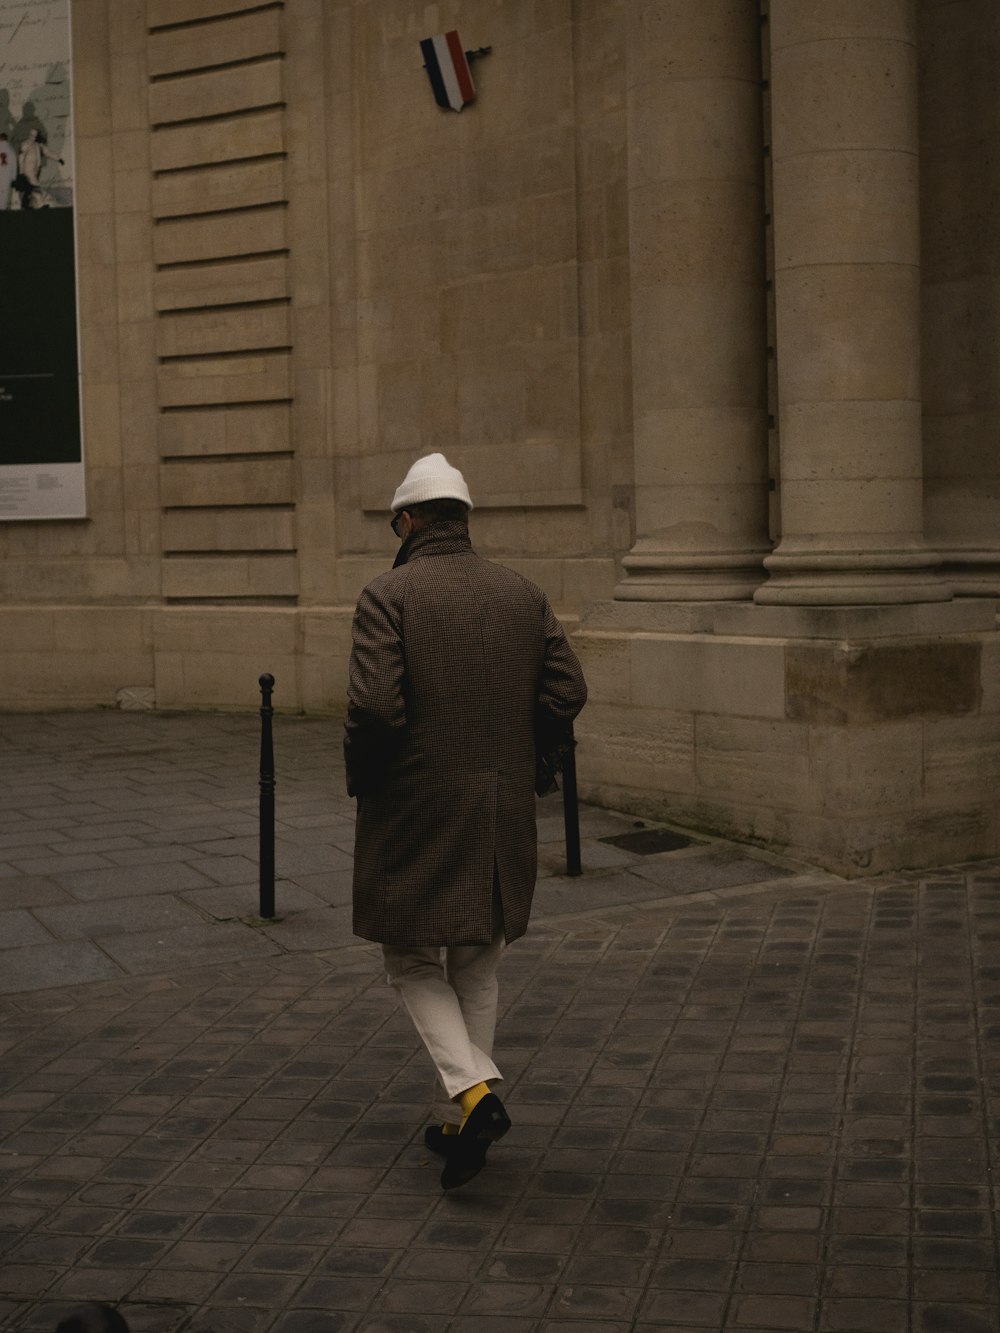 Ein Mann, der in Mantel und Hut die Straße entlang geht